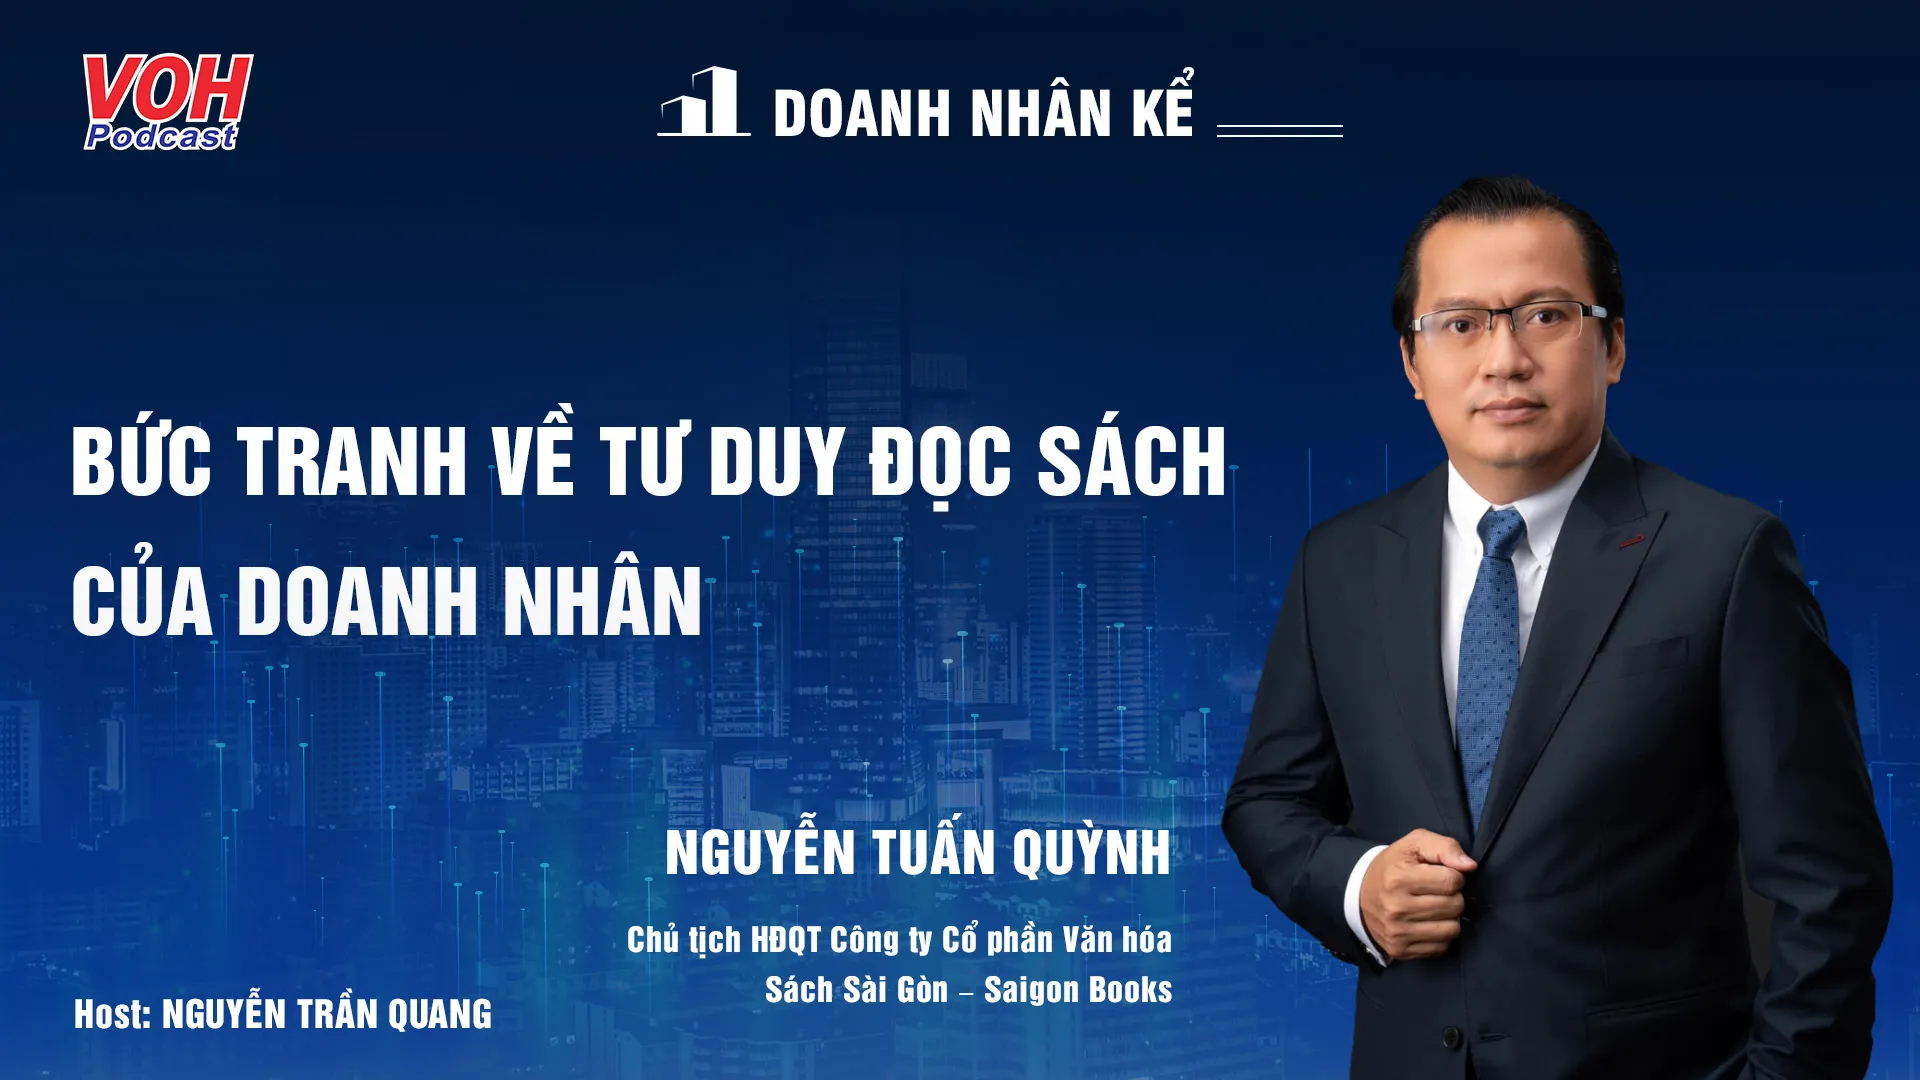 CEO Nguyễn Tuấn Quỳnh: Bài học khởi nghiệp tuổi U50 | DNK #13